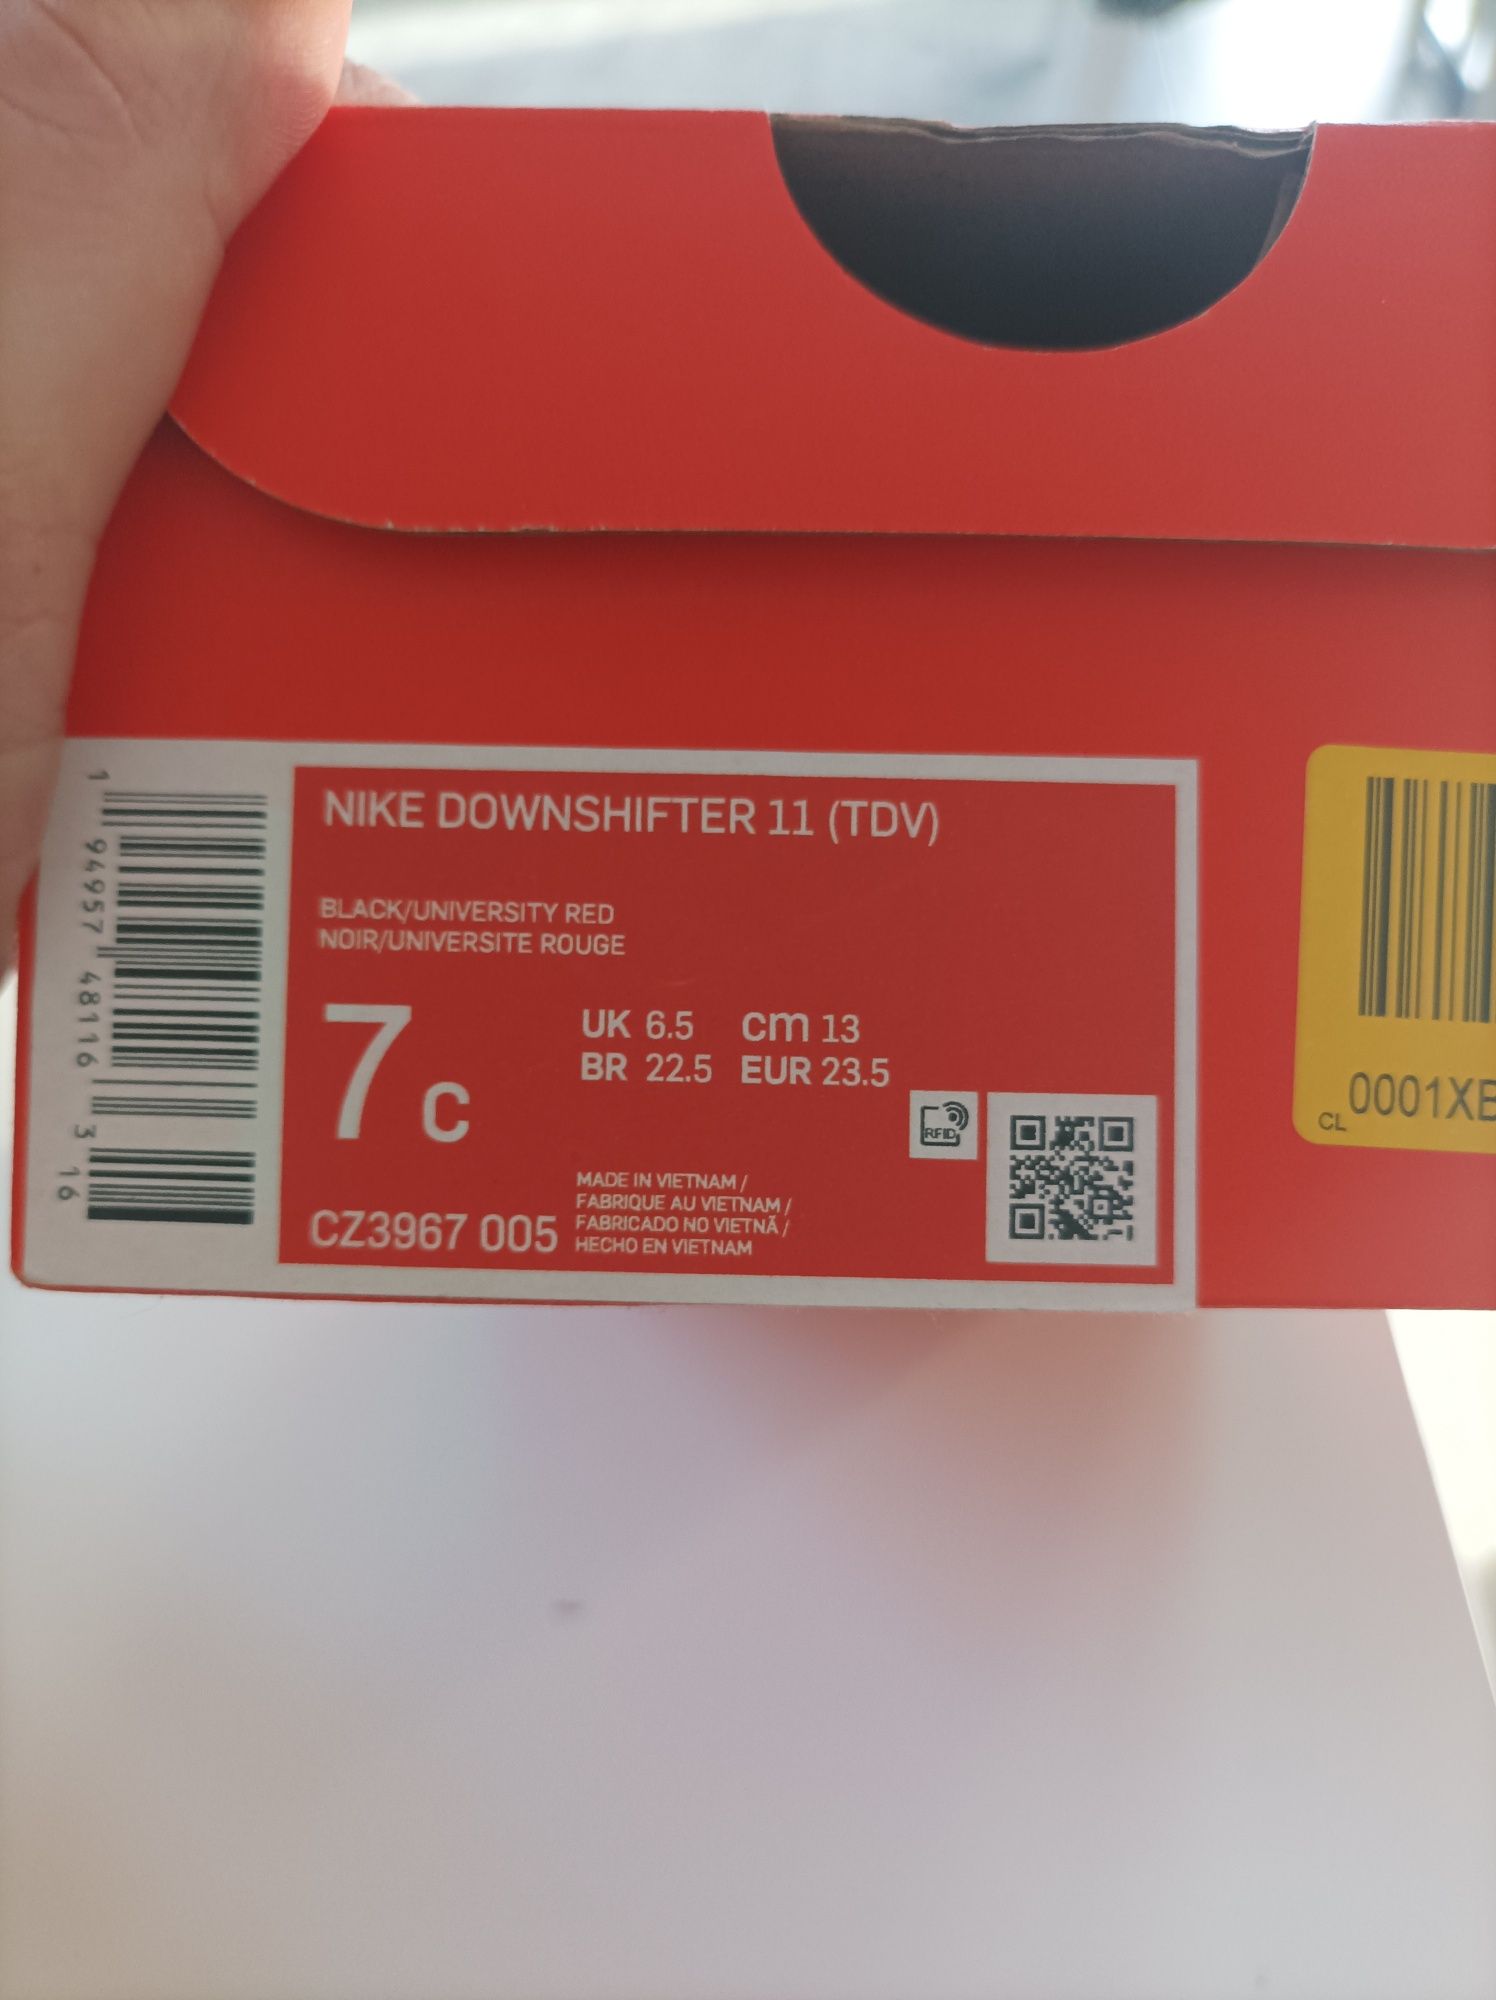 Nowe buty chłopięce Nike - 13cm